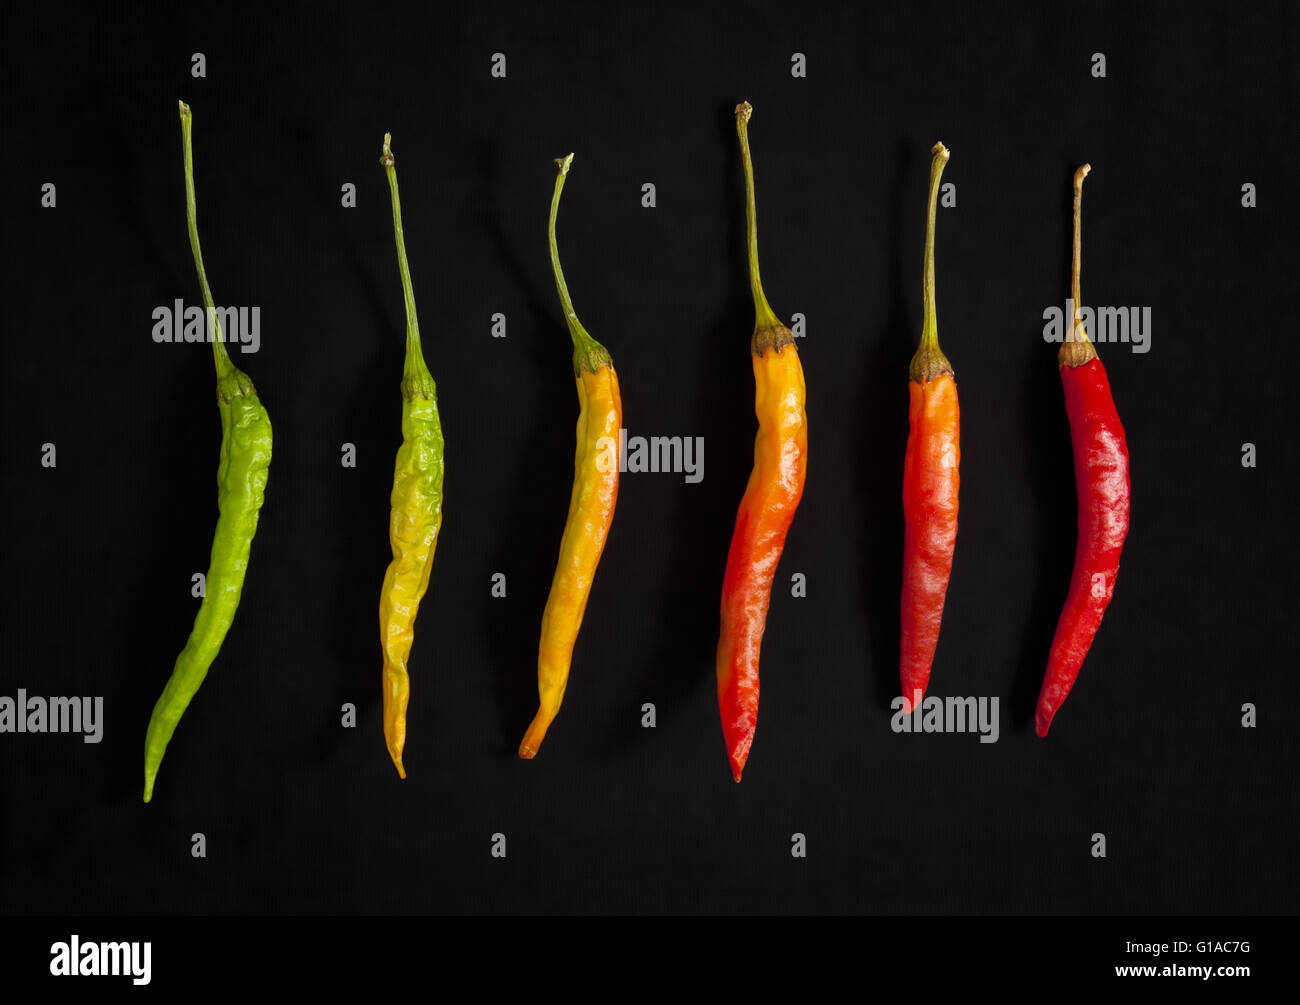 Degradación de hot chili peppers Foto de stock